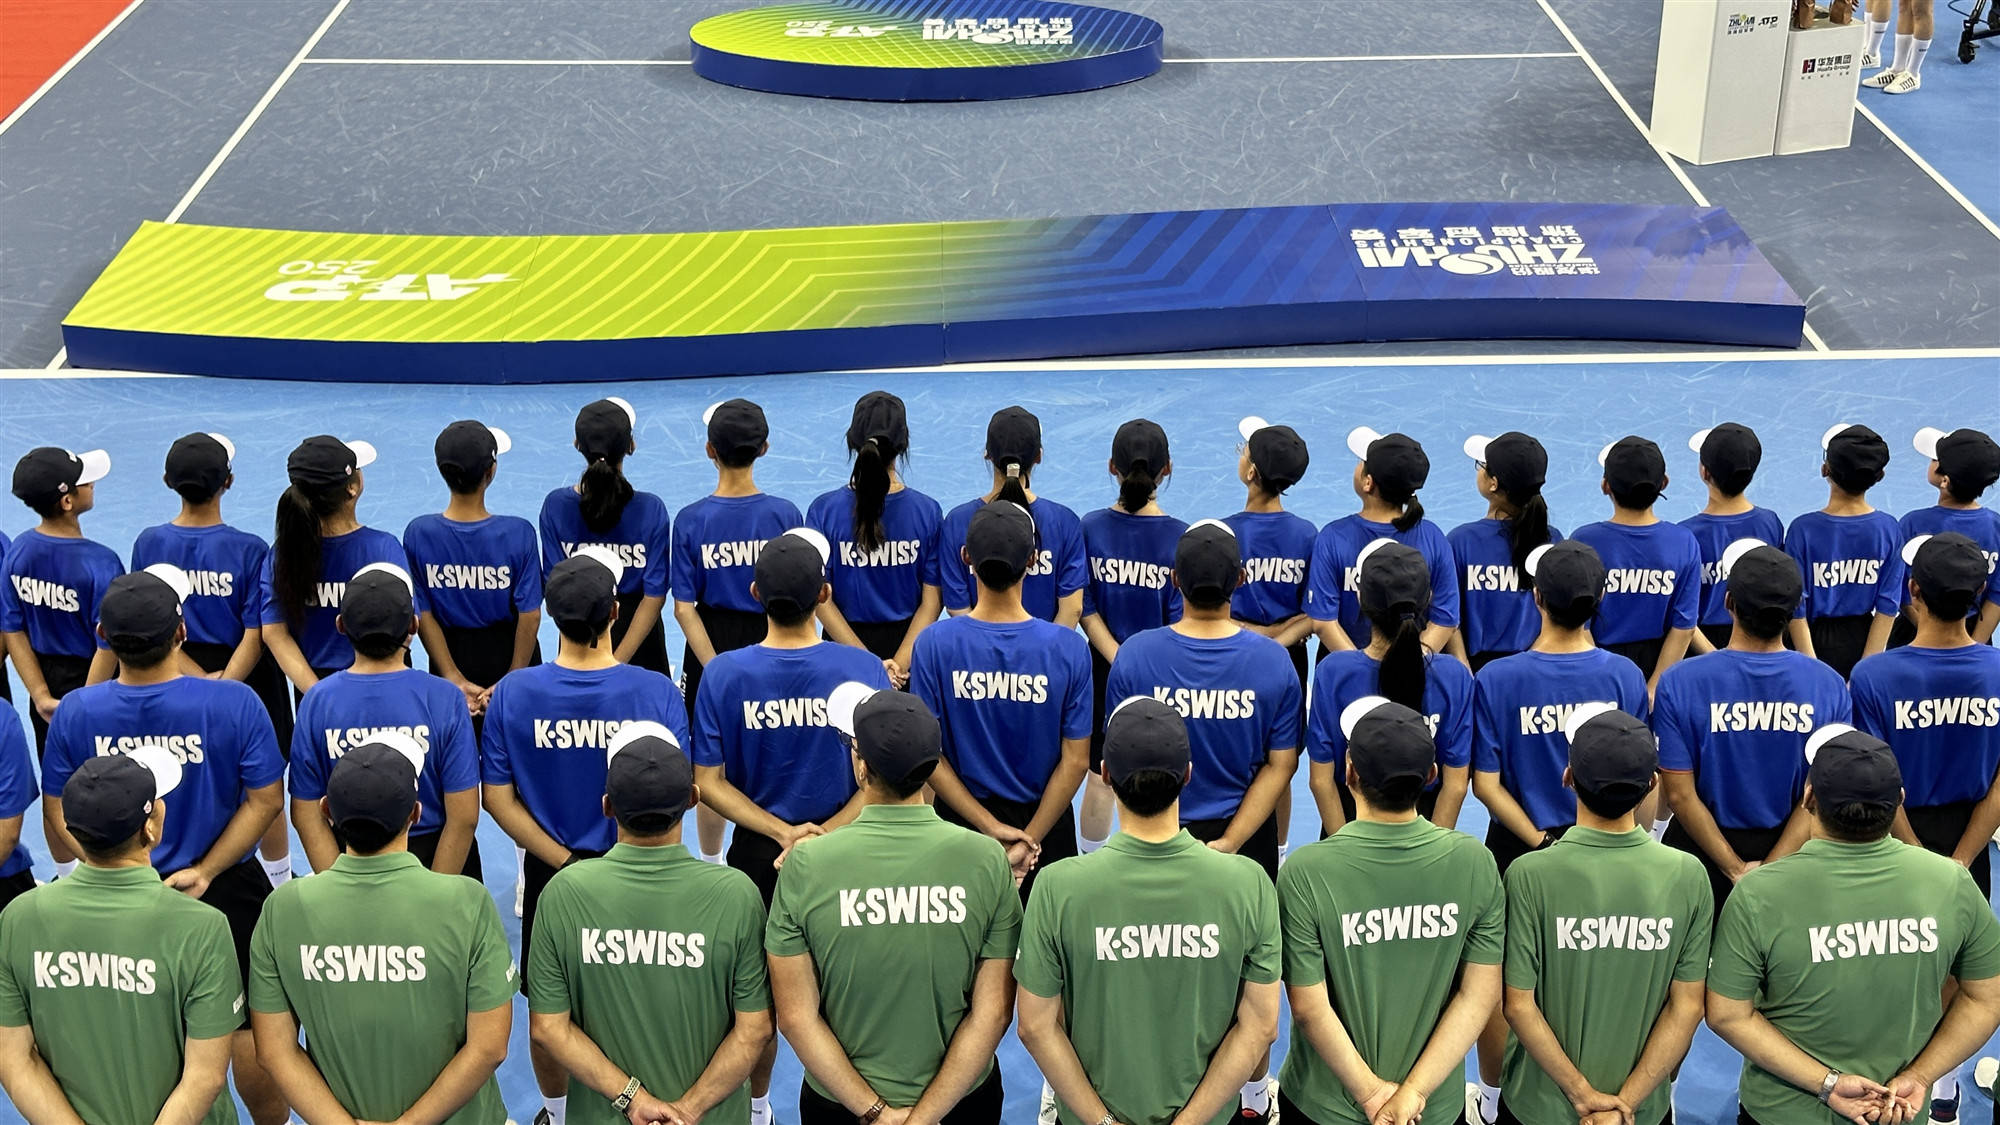 K•SWISS鼎力相助珠海WTA超级精英赛，与中国网球携手并进